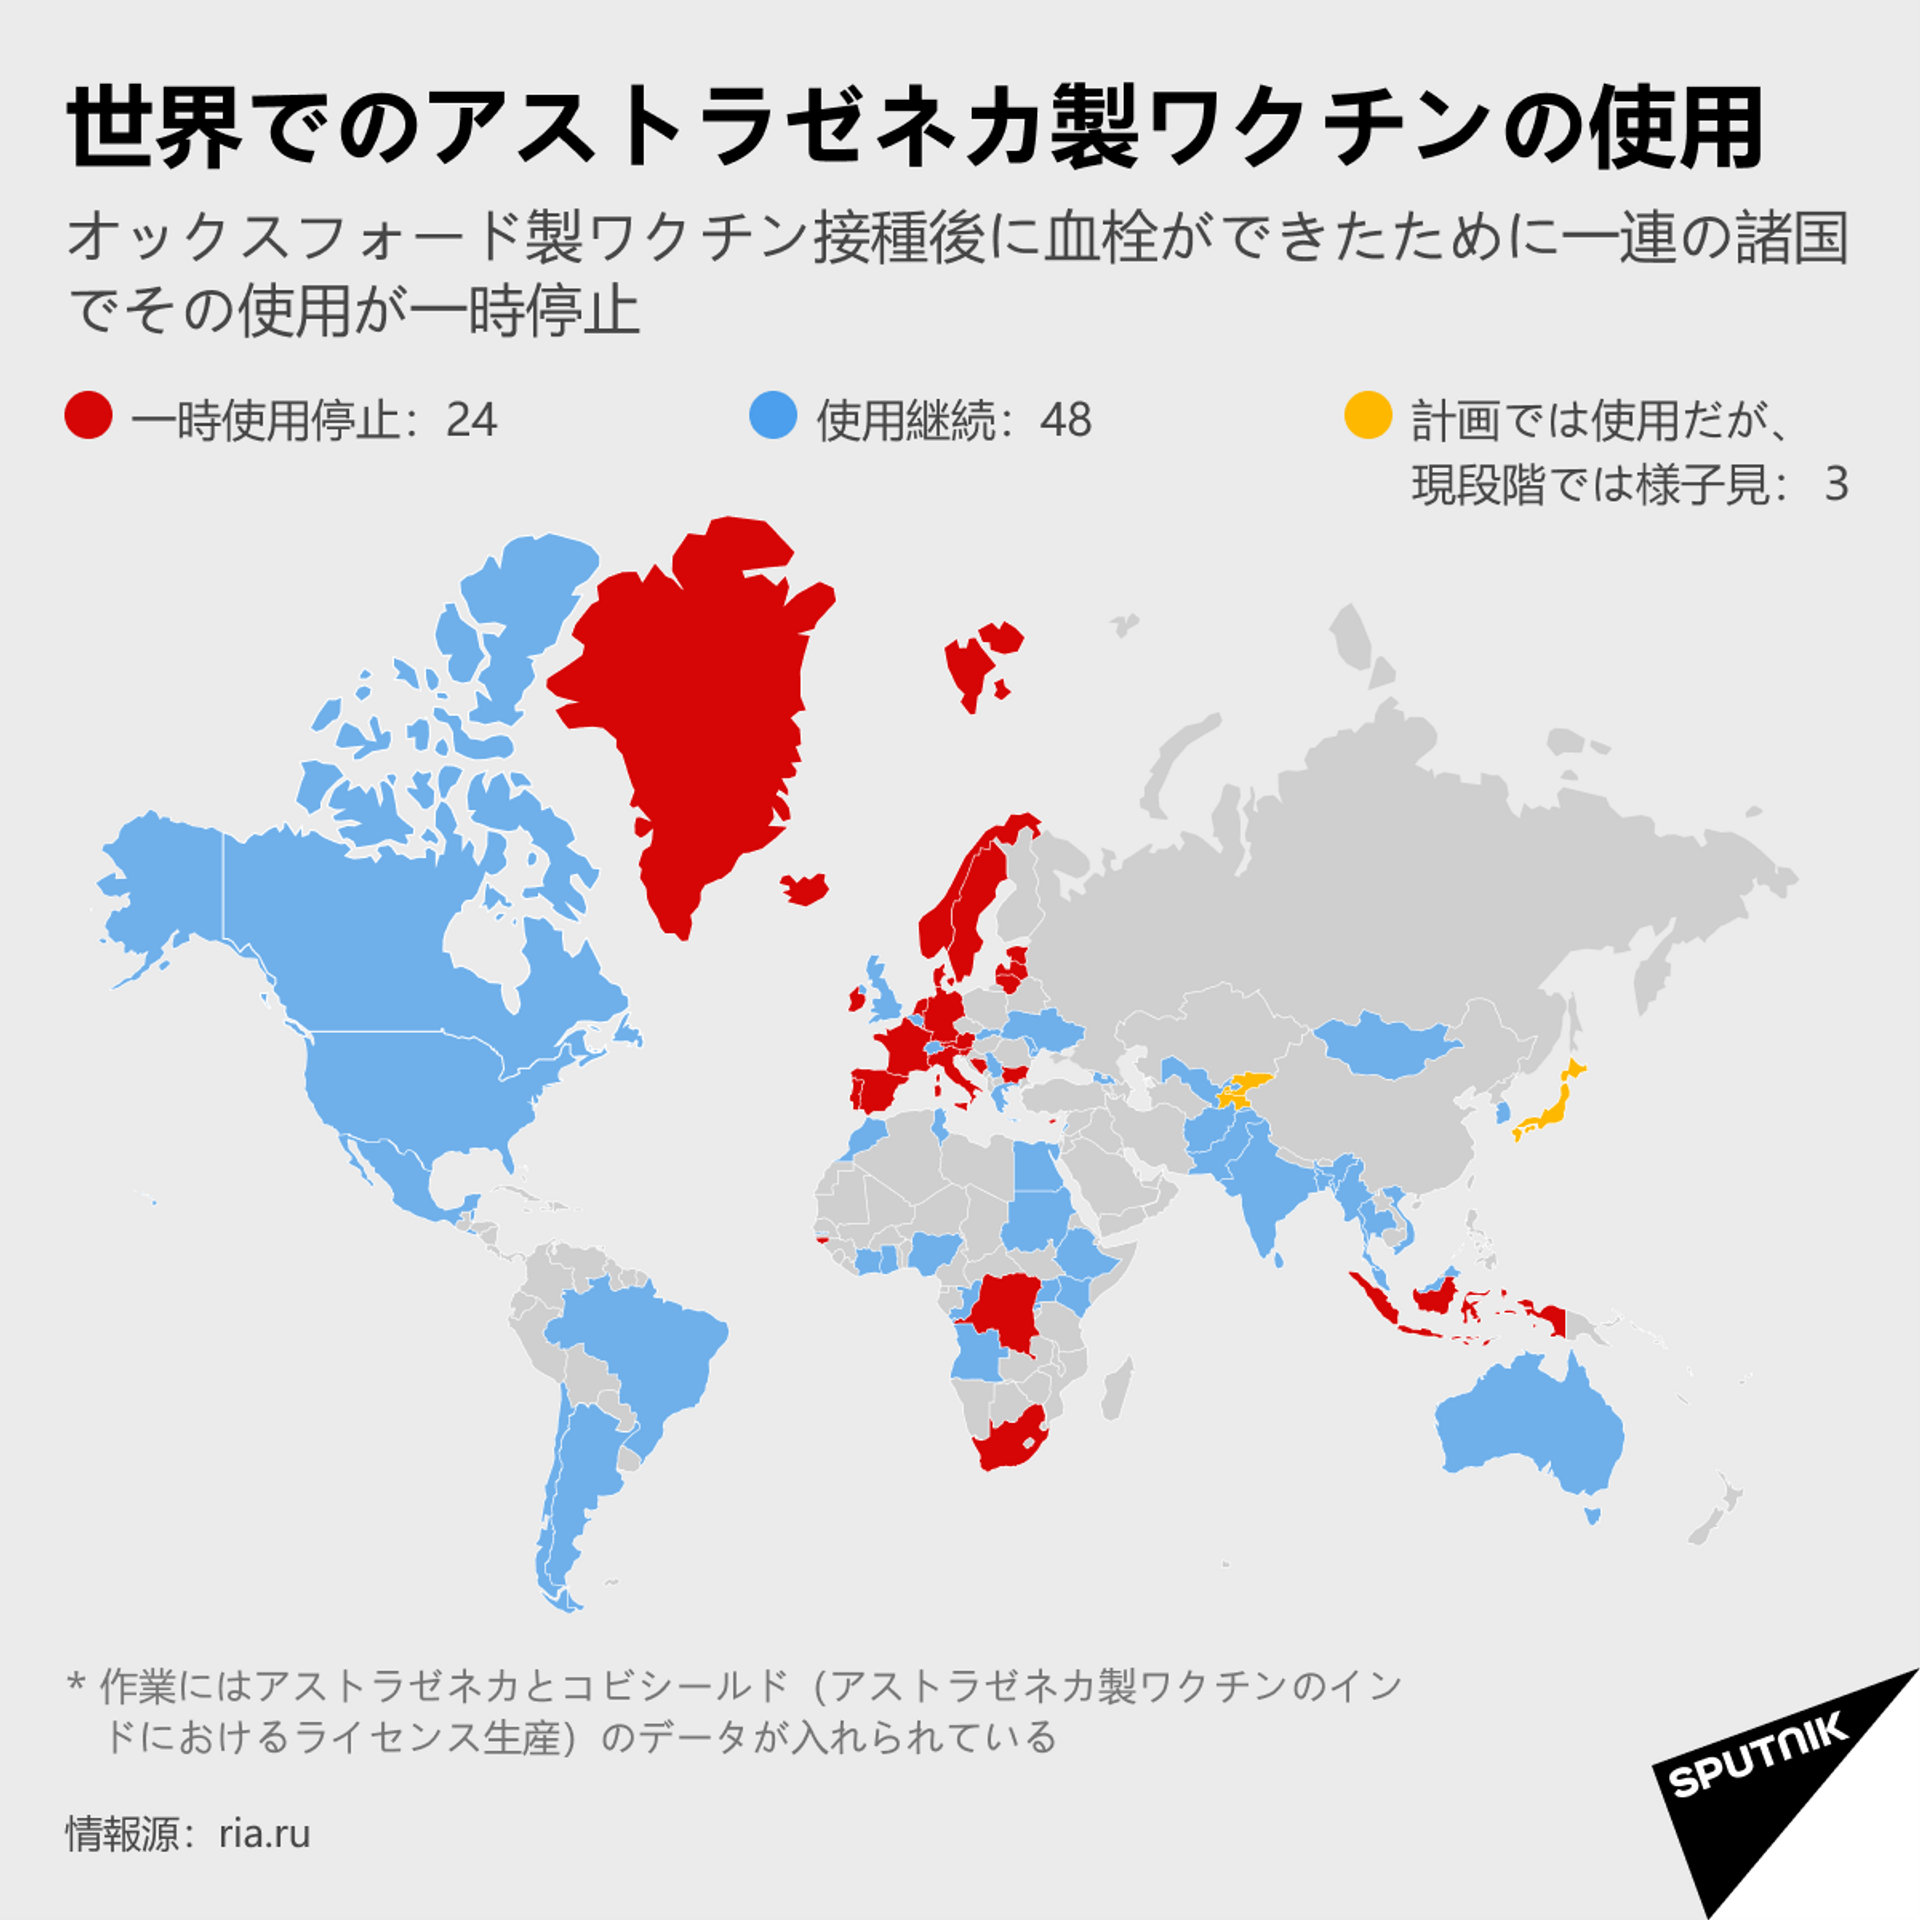 アストラゼネカ社製ワクチンをめぐるスキャンダル　すでに接種を中止したのはどの国か？ - Sputnik 日本, 1920, 19.03.2021